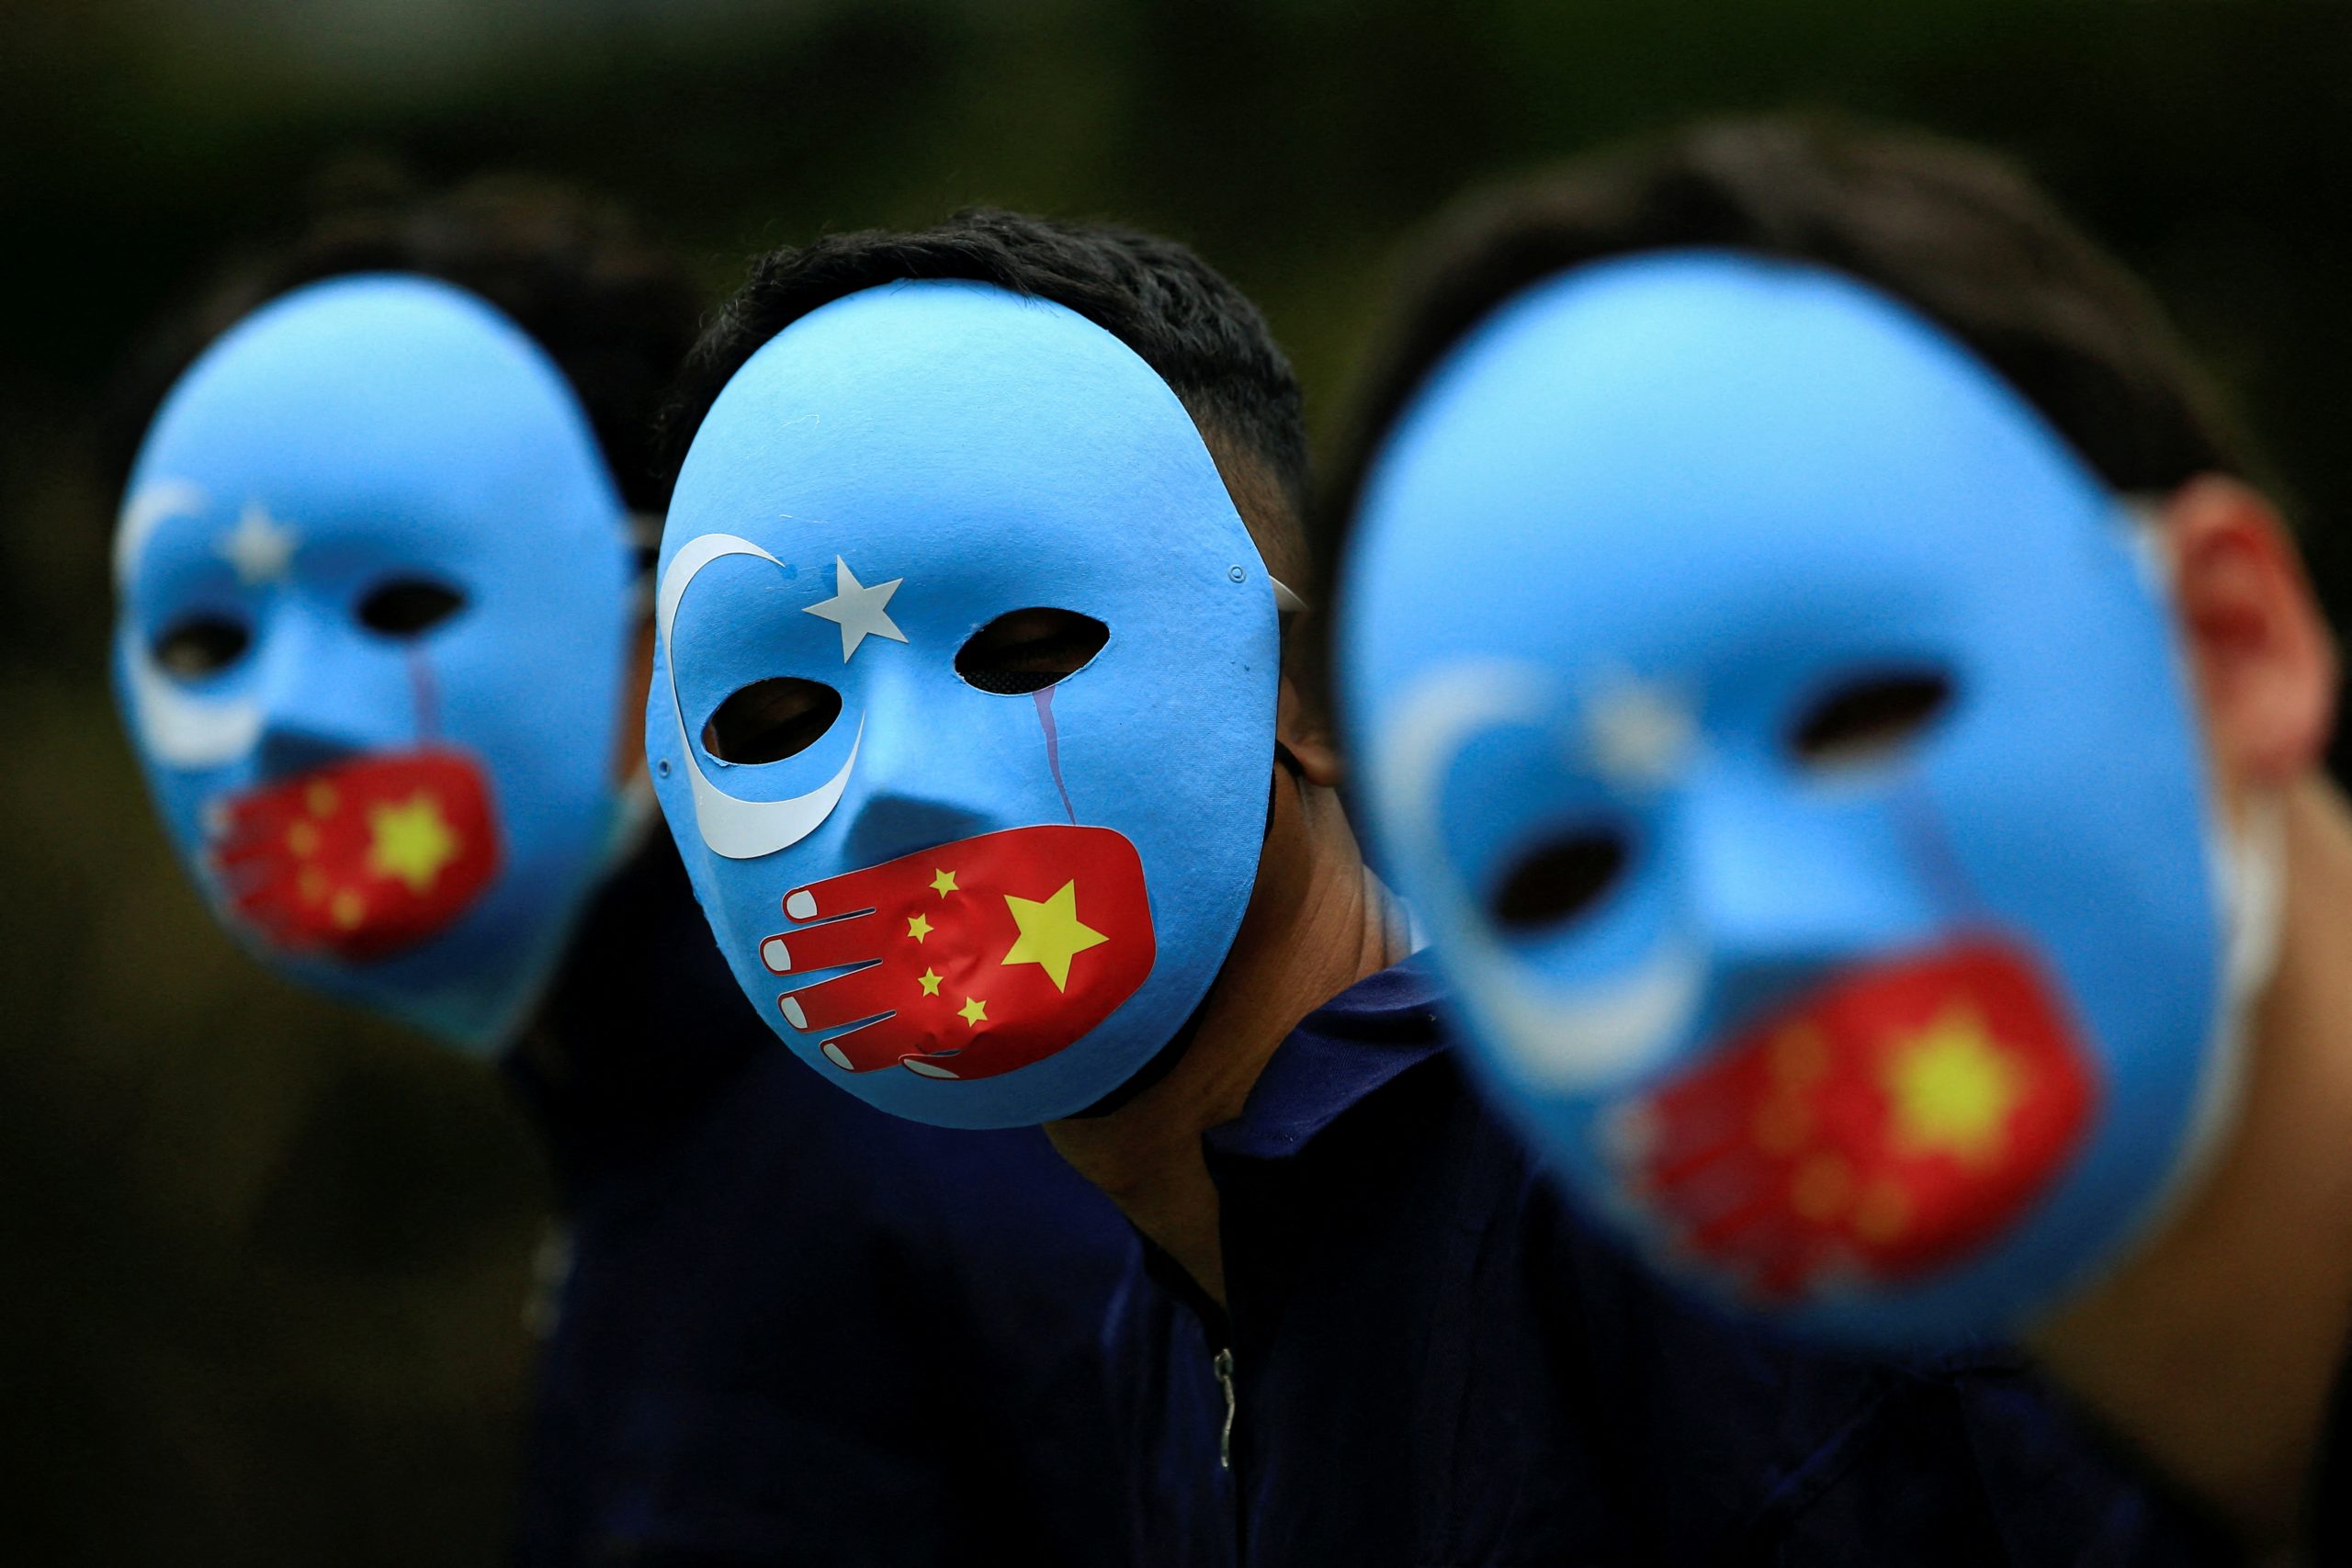 La Chine nie l'existence d'un génocide en cours au Xinjiang. (Source : Moustique.be)